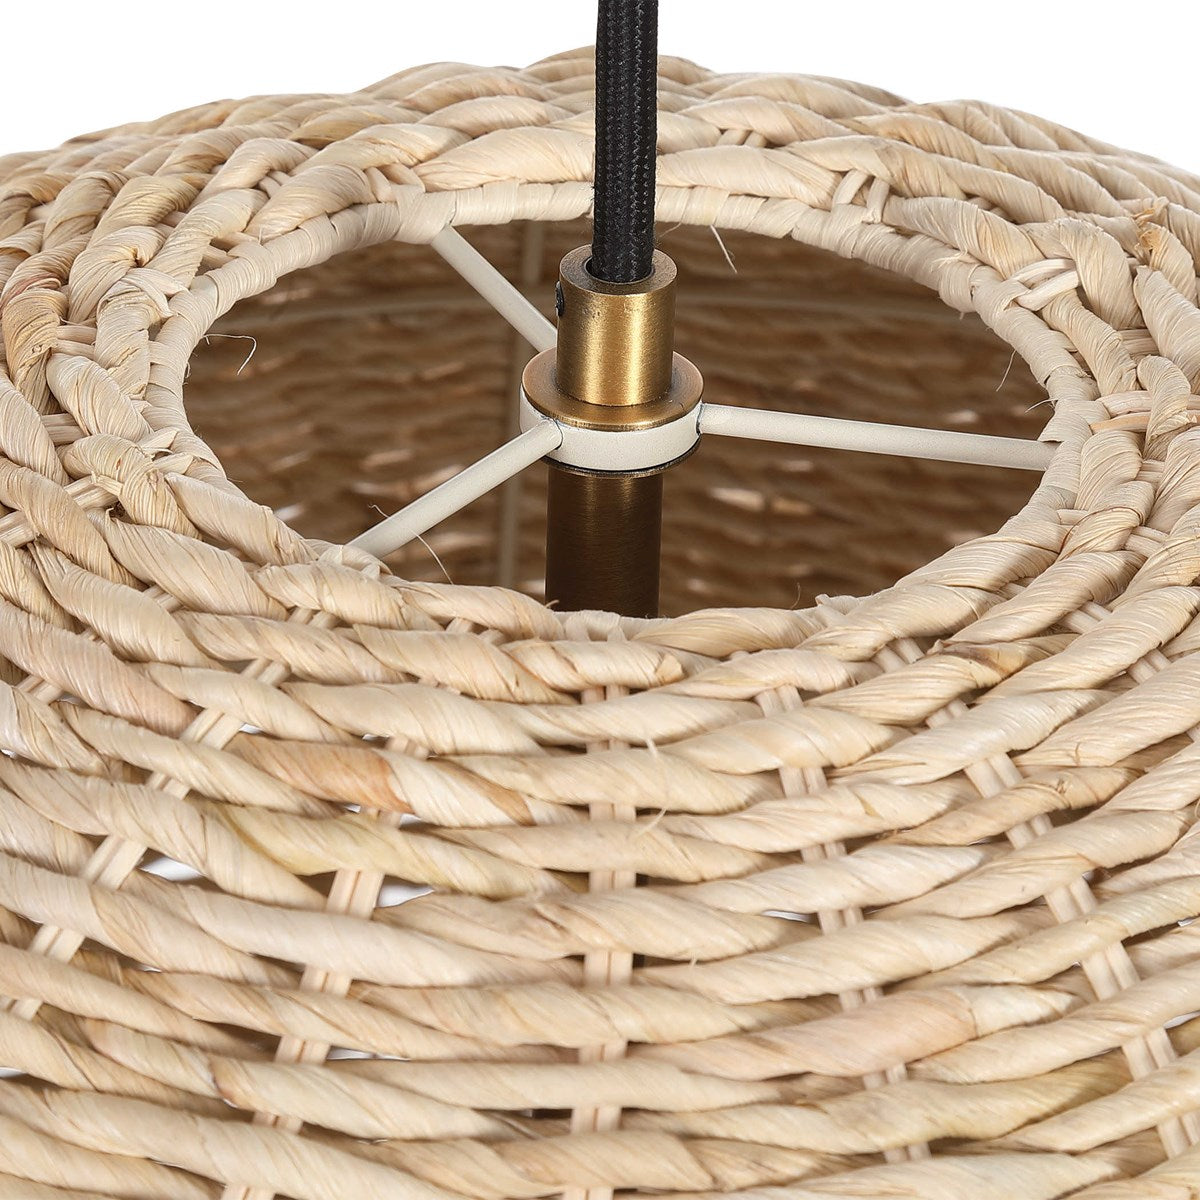 Seagrass Dome Lamp Pendant